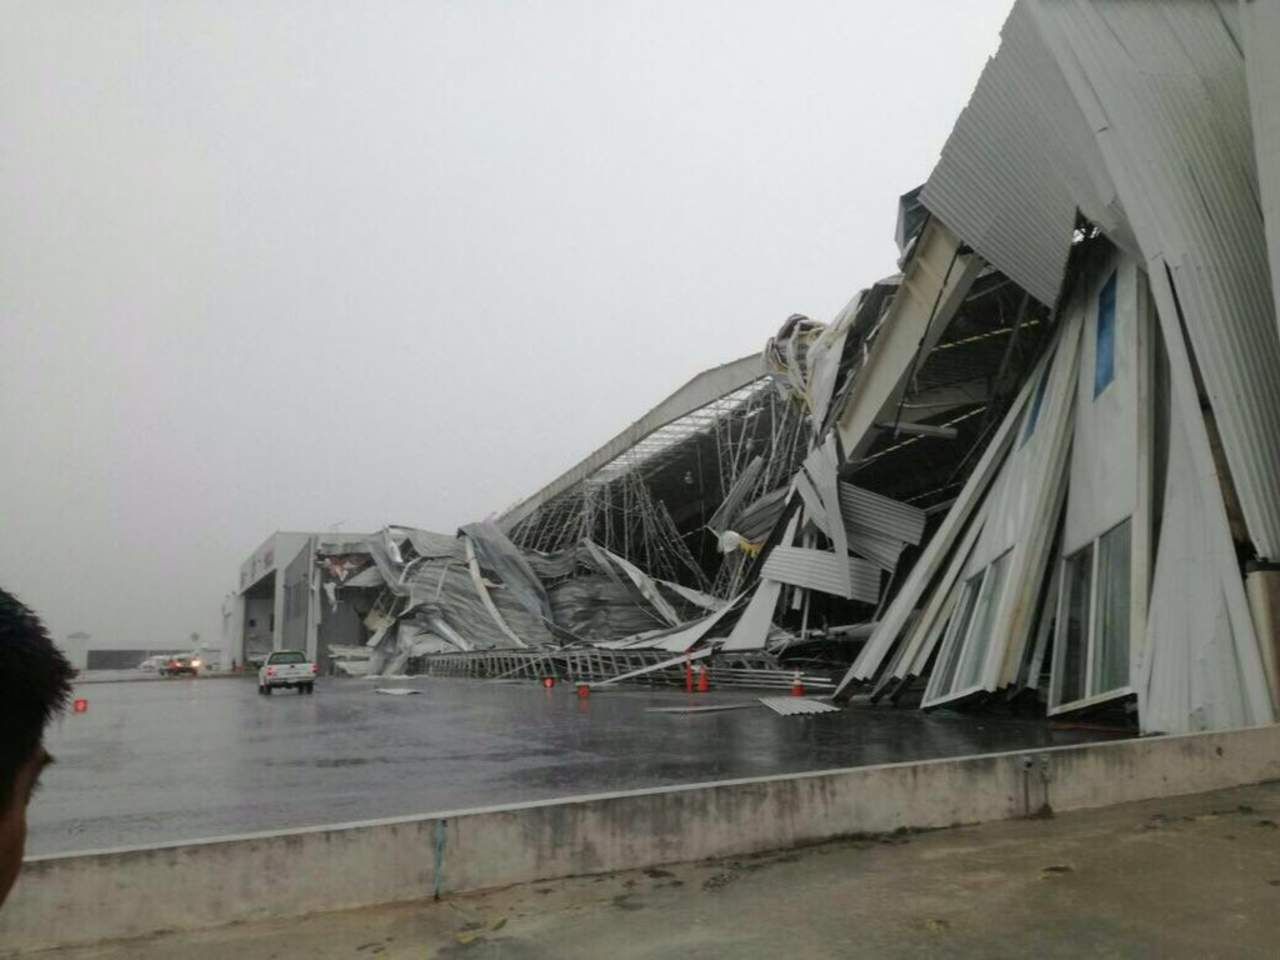 La dependencia dio a conocer que sólo un hangar presentó daños mayores debido a las ráfagas de viento que arrancaron parte del techo de las mencionadas instalaciones, que prestan servicios privados de aviación. (TWITTER)
